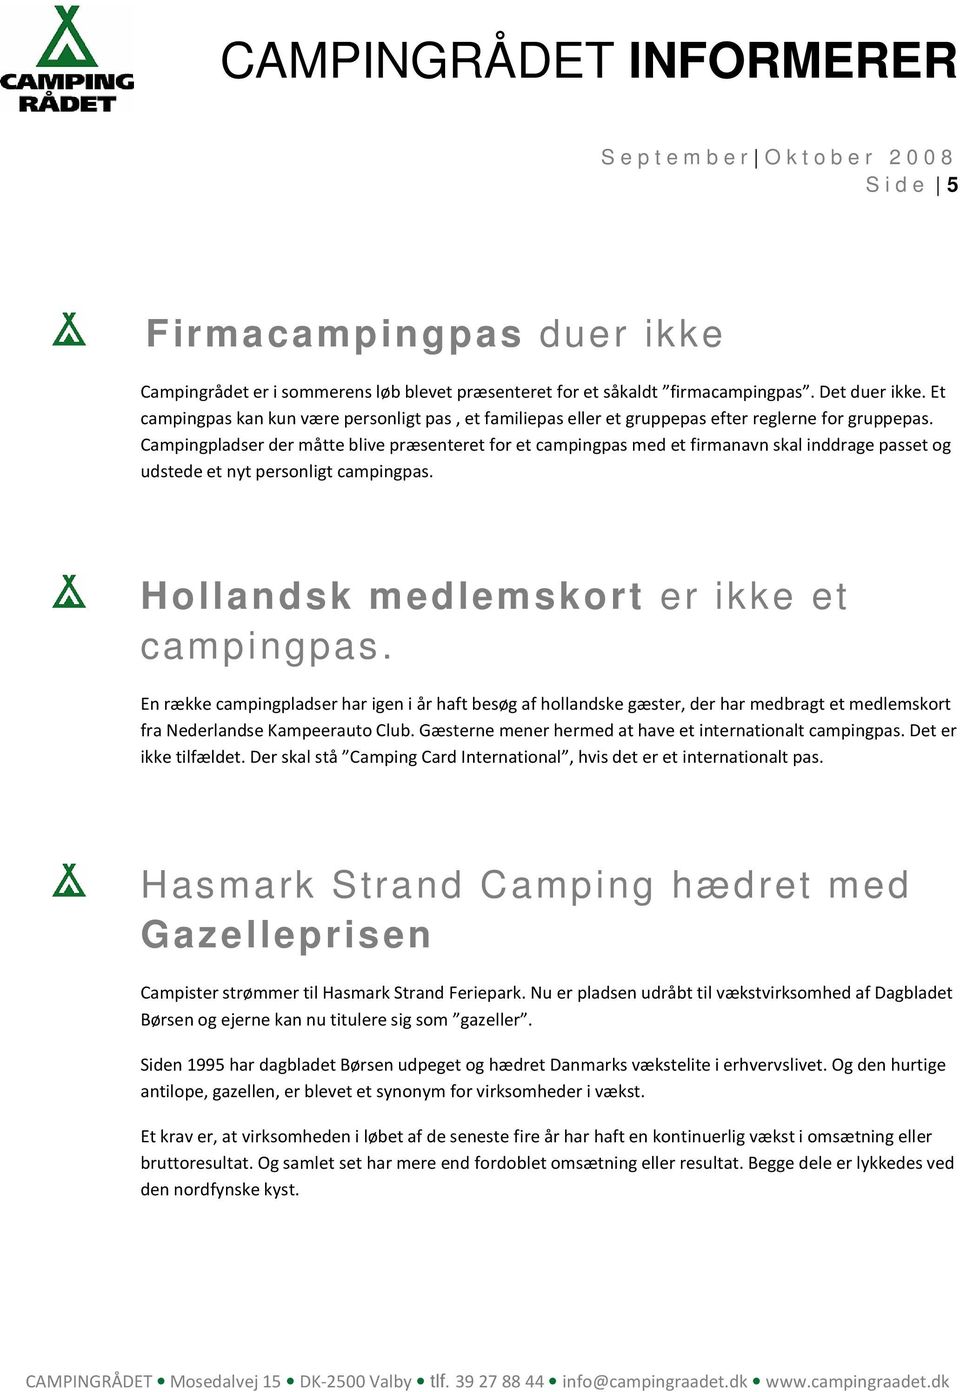 Campingpladser der måtte blive præsenteret for et campingpas med et firmanavn skal inddrage passet og udstede et nyt personligt campingpas. Hollandsk medlemskort er ikke et campingpas.